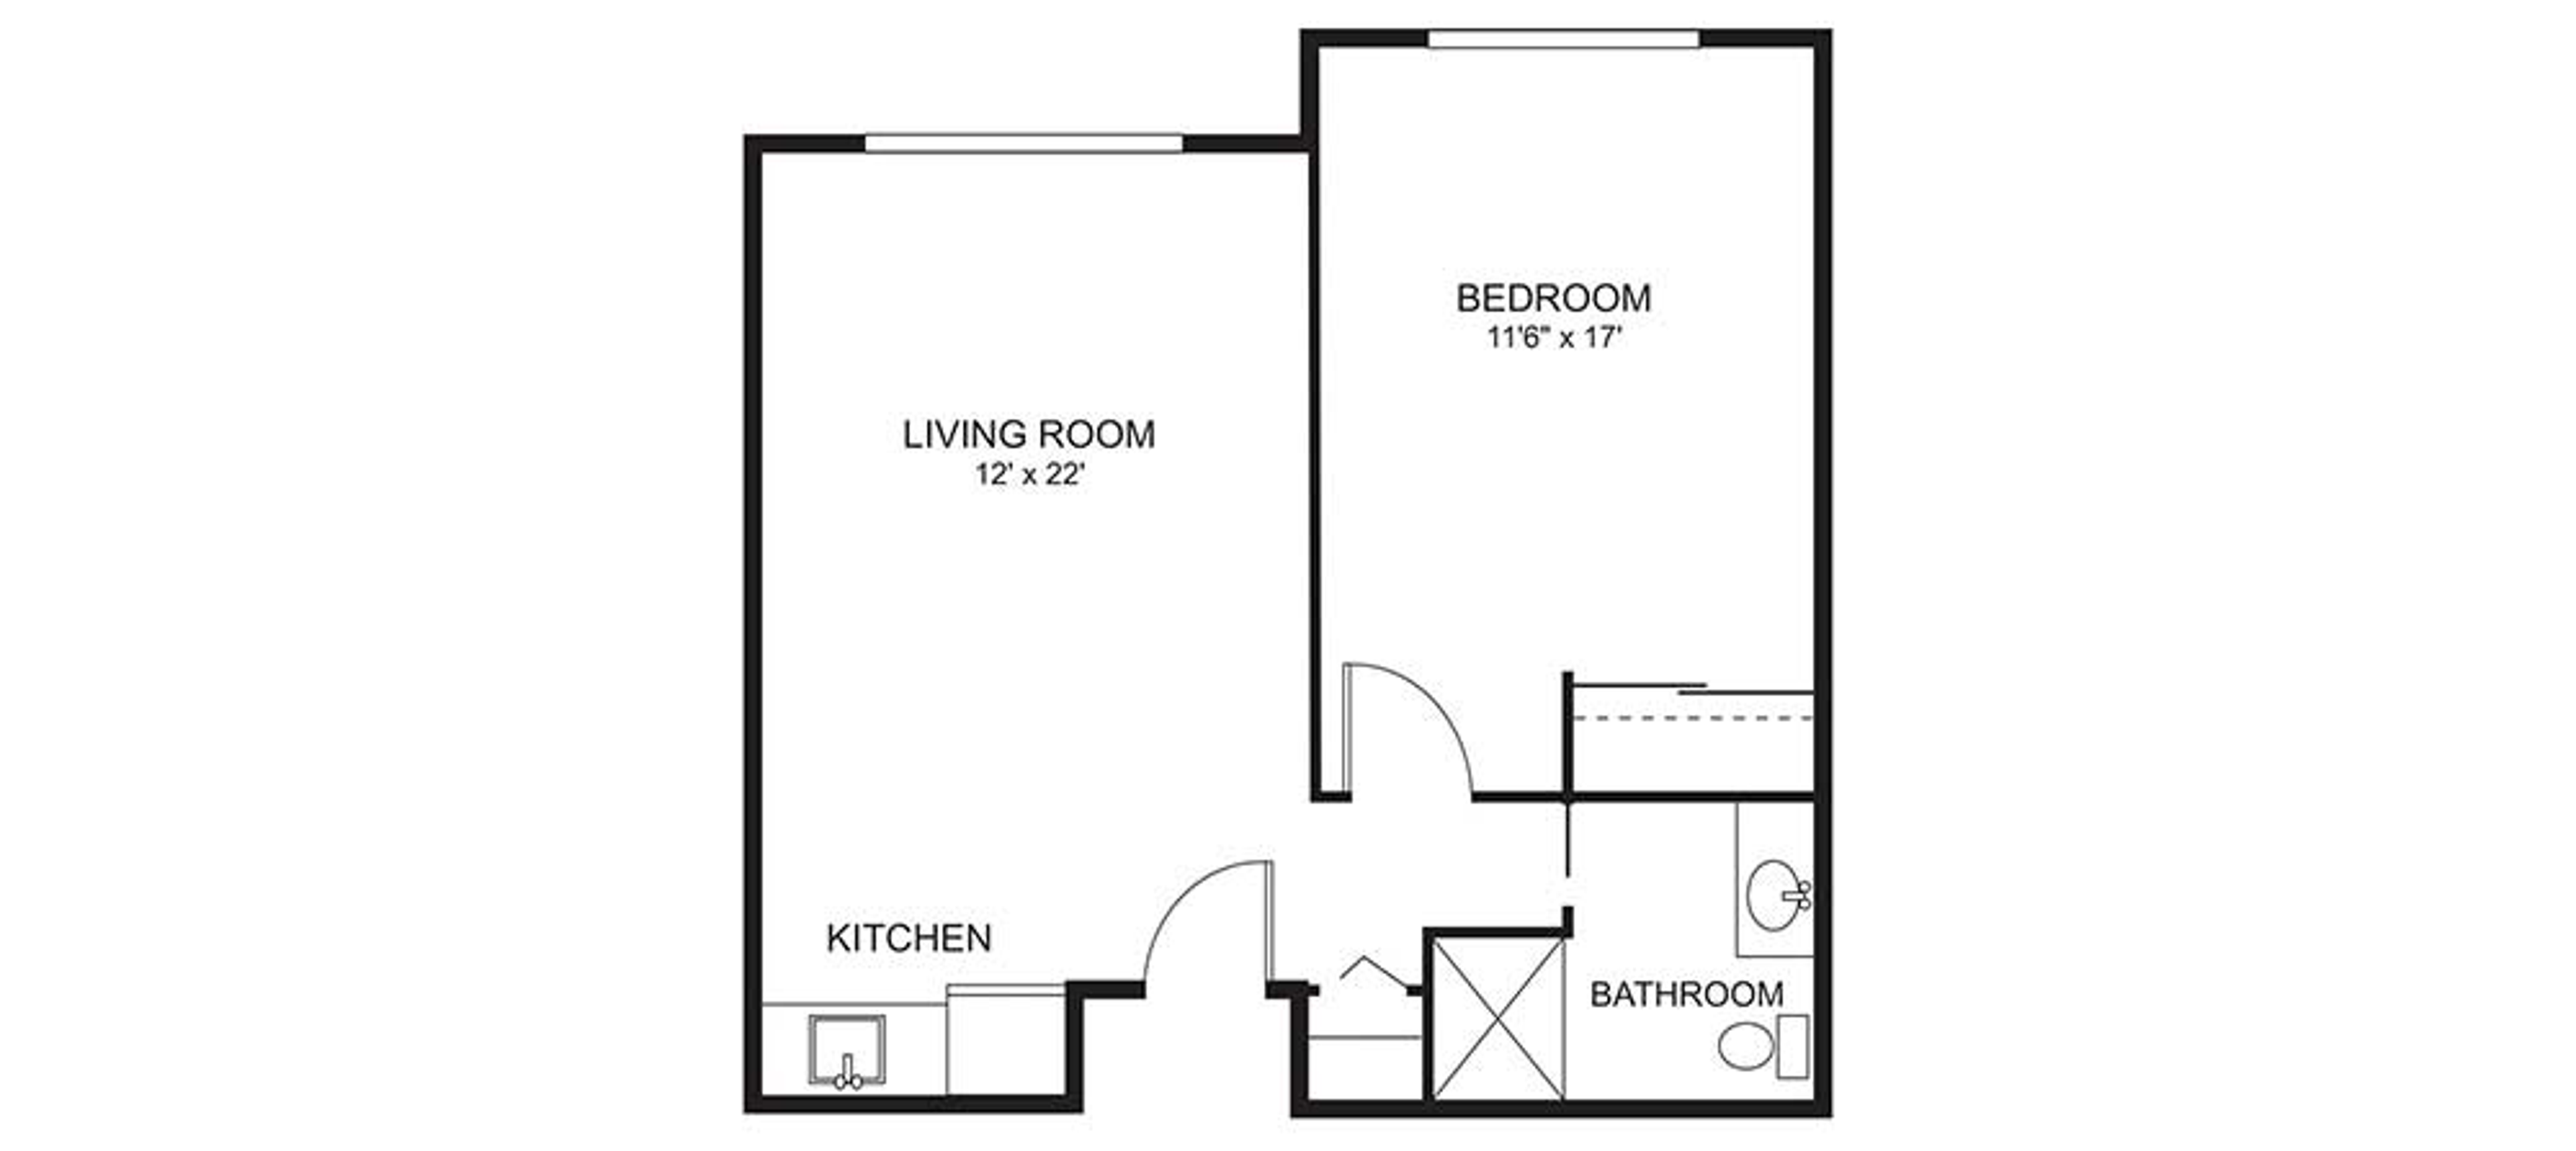 Floorplan - Bay Pointe - 1B 1B 570 sqft Assisted Living 